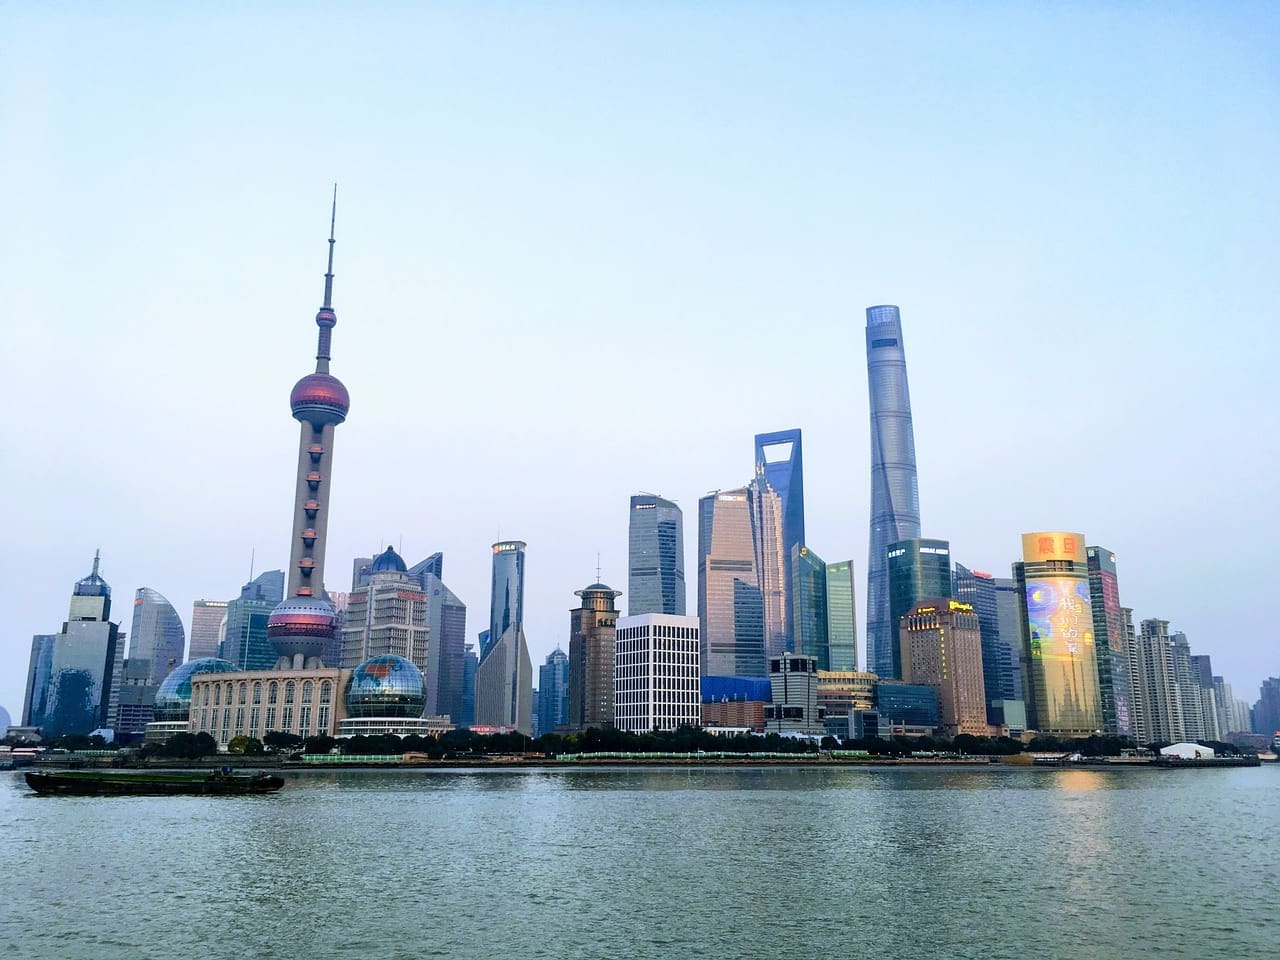 The skyline of Shanghai.